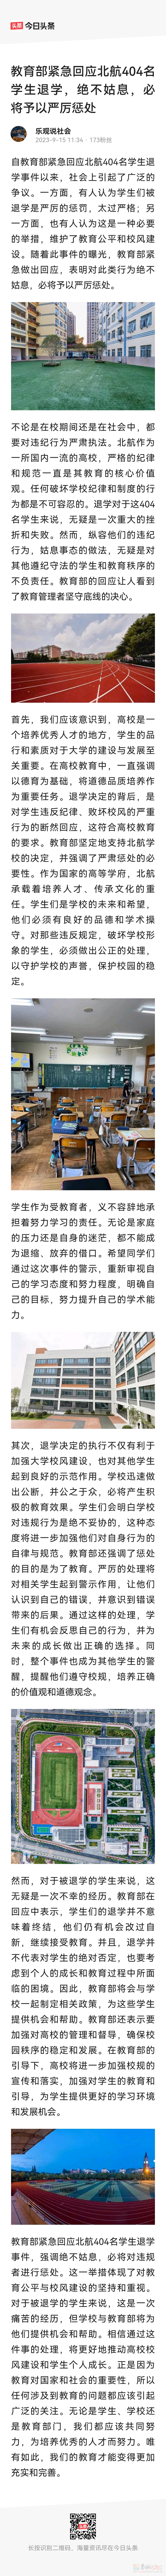 在学校摸鱼打混，北京航空航天大学一下退学404名学生339 / 作者:猛龙 / 帖子ID:310280